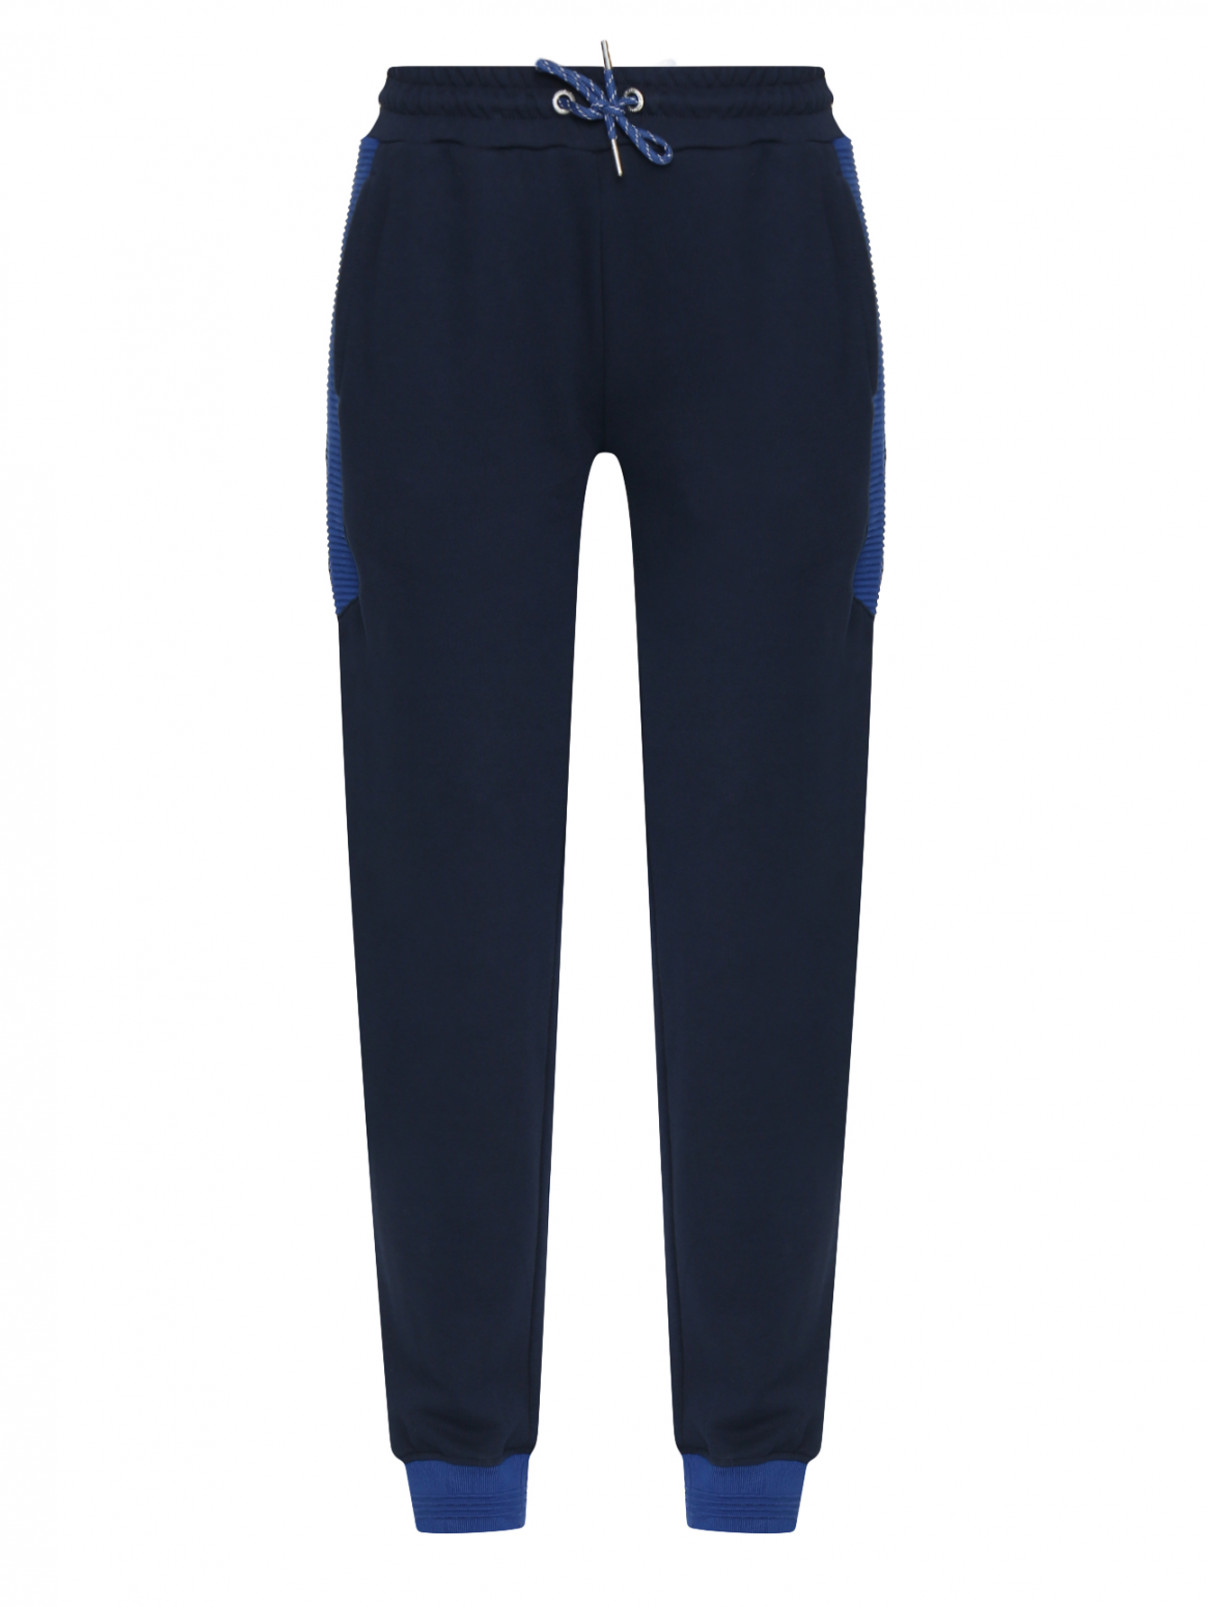 Спортивные брюки из хлопка на резинке BOSCO  –  Общий вид  – Цвет:  Синий